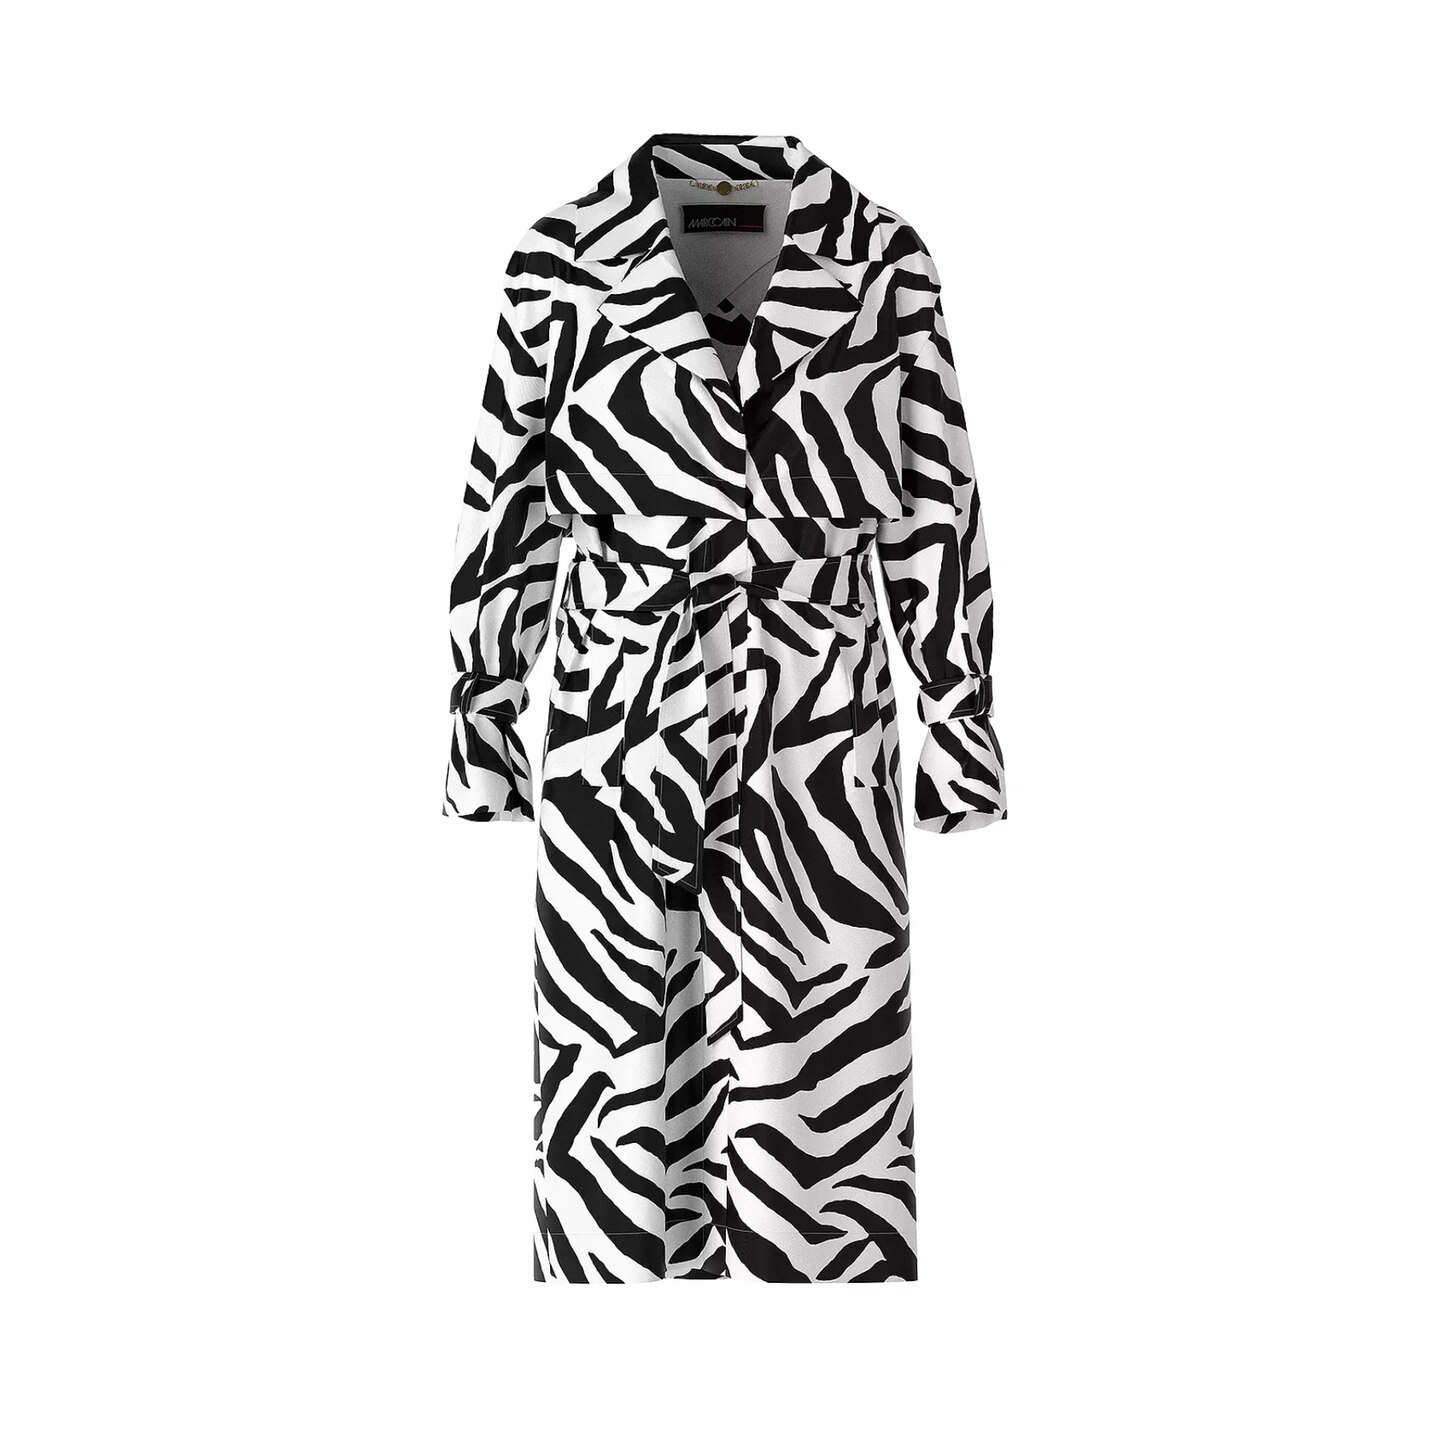 Der Mantel in Trenchcoat-Optik erhält durch das Zebra-Design ordentlich Spannung. Ein Bindegürtel verleiht dem Look Aufregung und betont die Taille. Von Marc Cain, für etwa 449 Euro erhältlich.